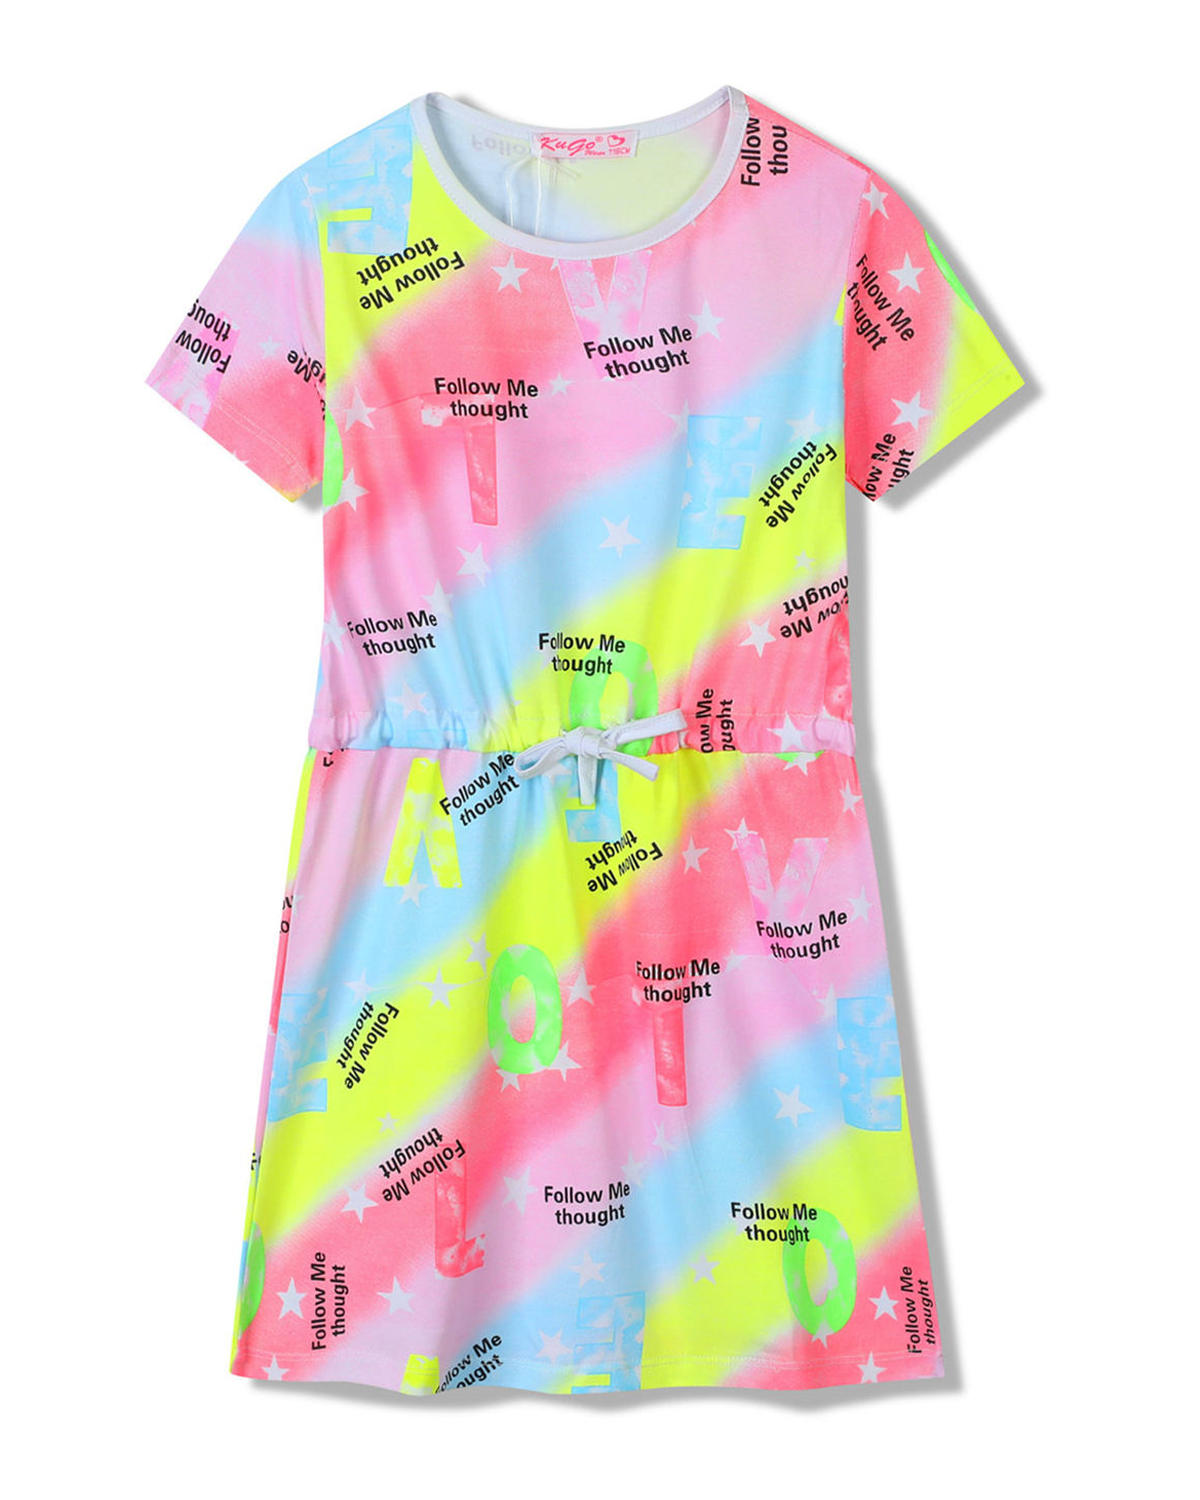 Dívčí šaty - KUGO SH3518, mix barev / fialkový lem Barva: Mix barev, Velikost: 146